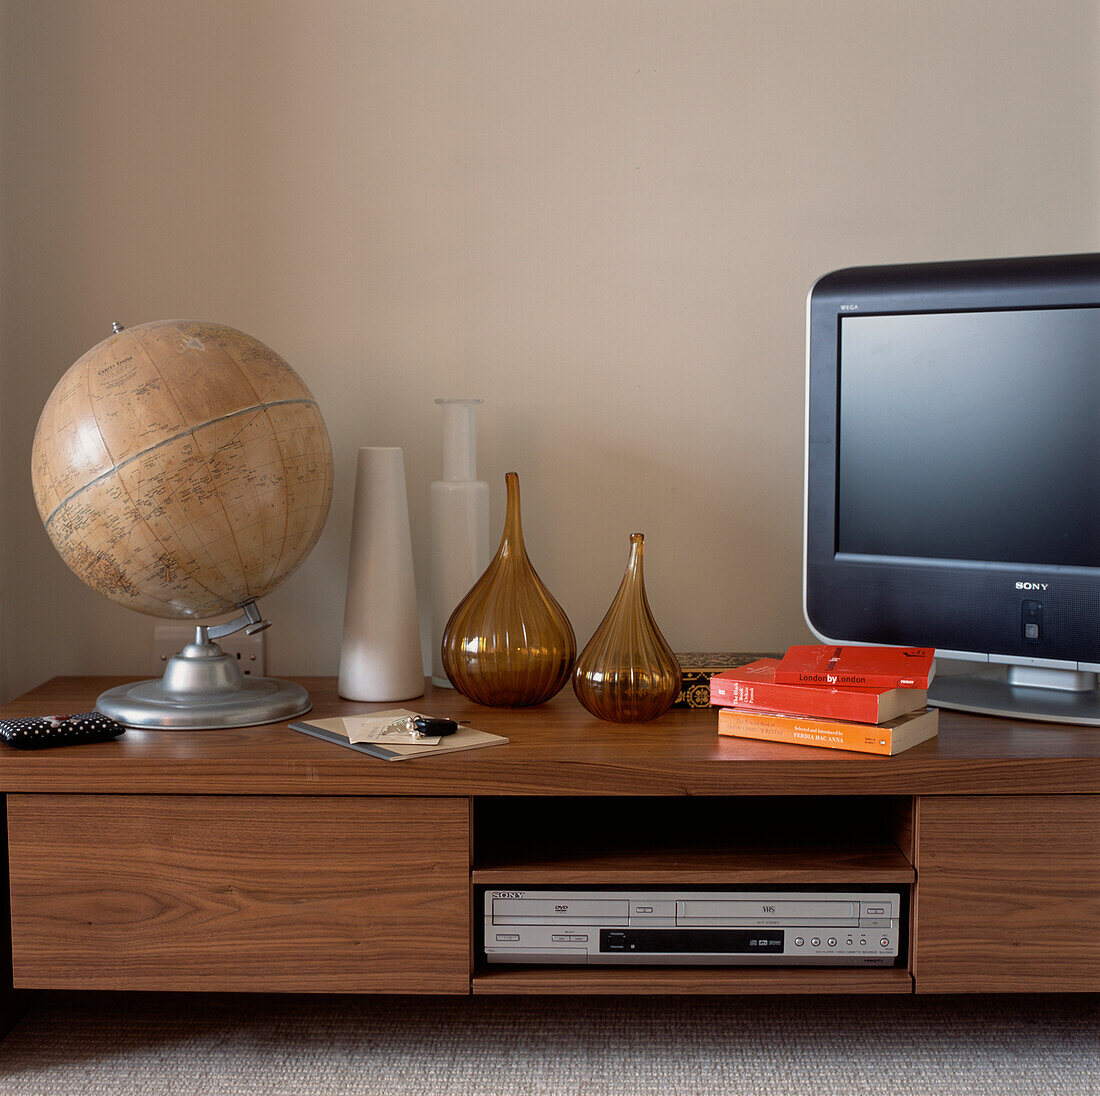 Moderner Fernseh- und DVD-Schrank aus Walnussholz im Wohnzimmer mit Glas- und Keramikvasen und Vintage-Globus